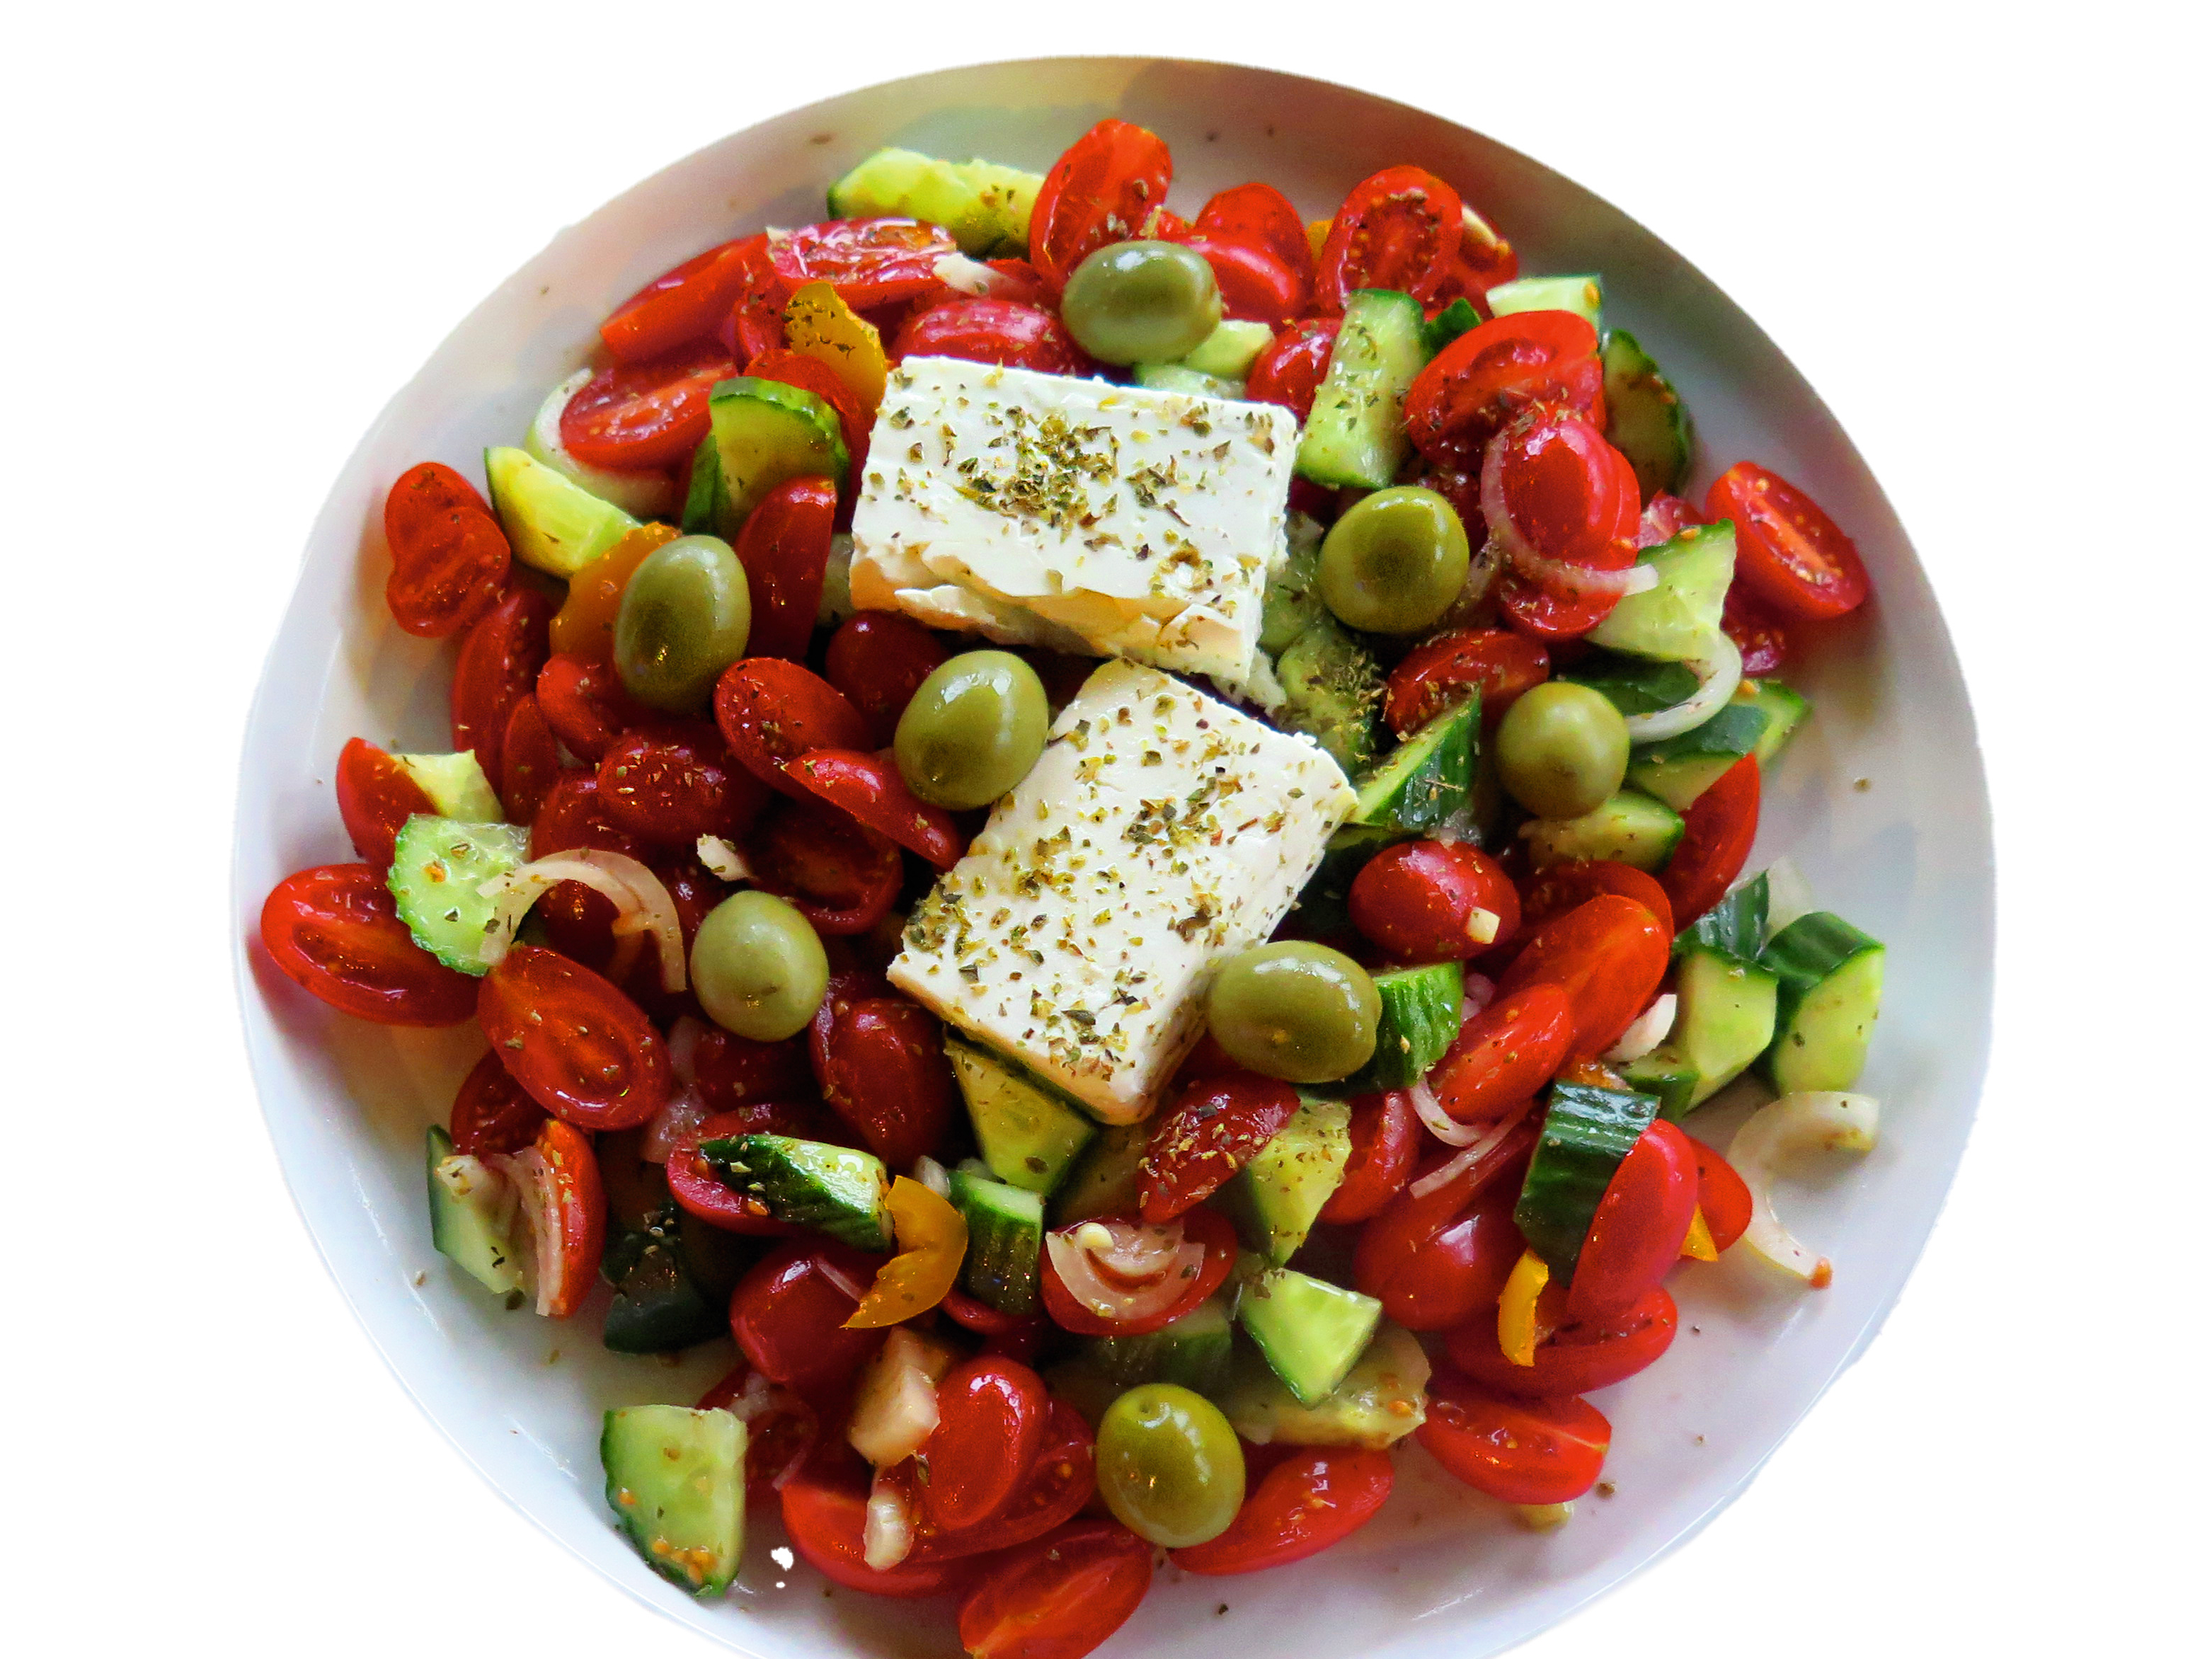 Tradicionālie grieķu salāti ir ātri pagatavojams, viegls ēdiens. Pietiekami sātīga ēdienreize karstā vasarā.